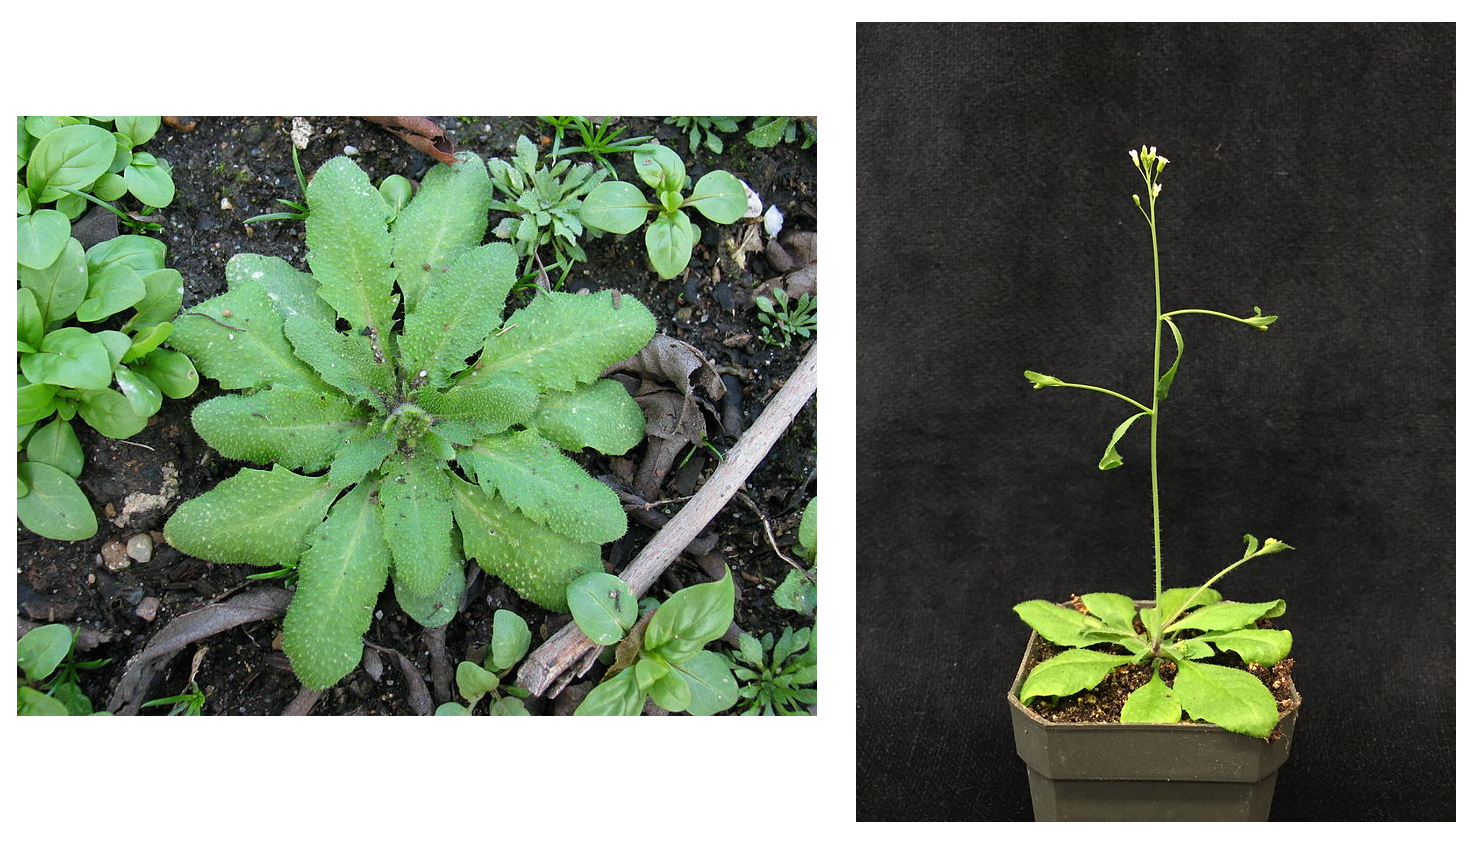 Arabidopsis thaliana sebagai roset basal (kiri) dan melesat dan berbunga (kanan).  Tanaman di sebelah kanan memiliki batang panjang yang muncul dari roset basal.